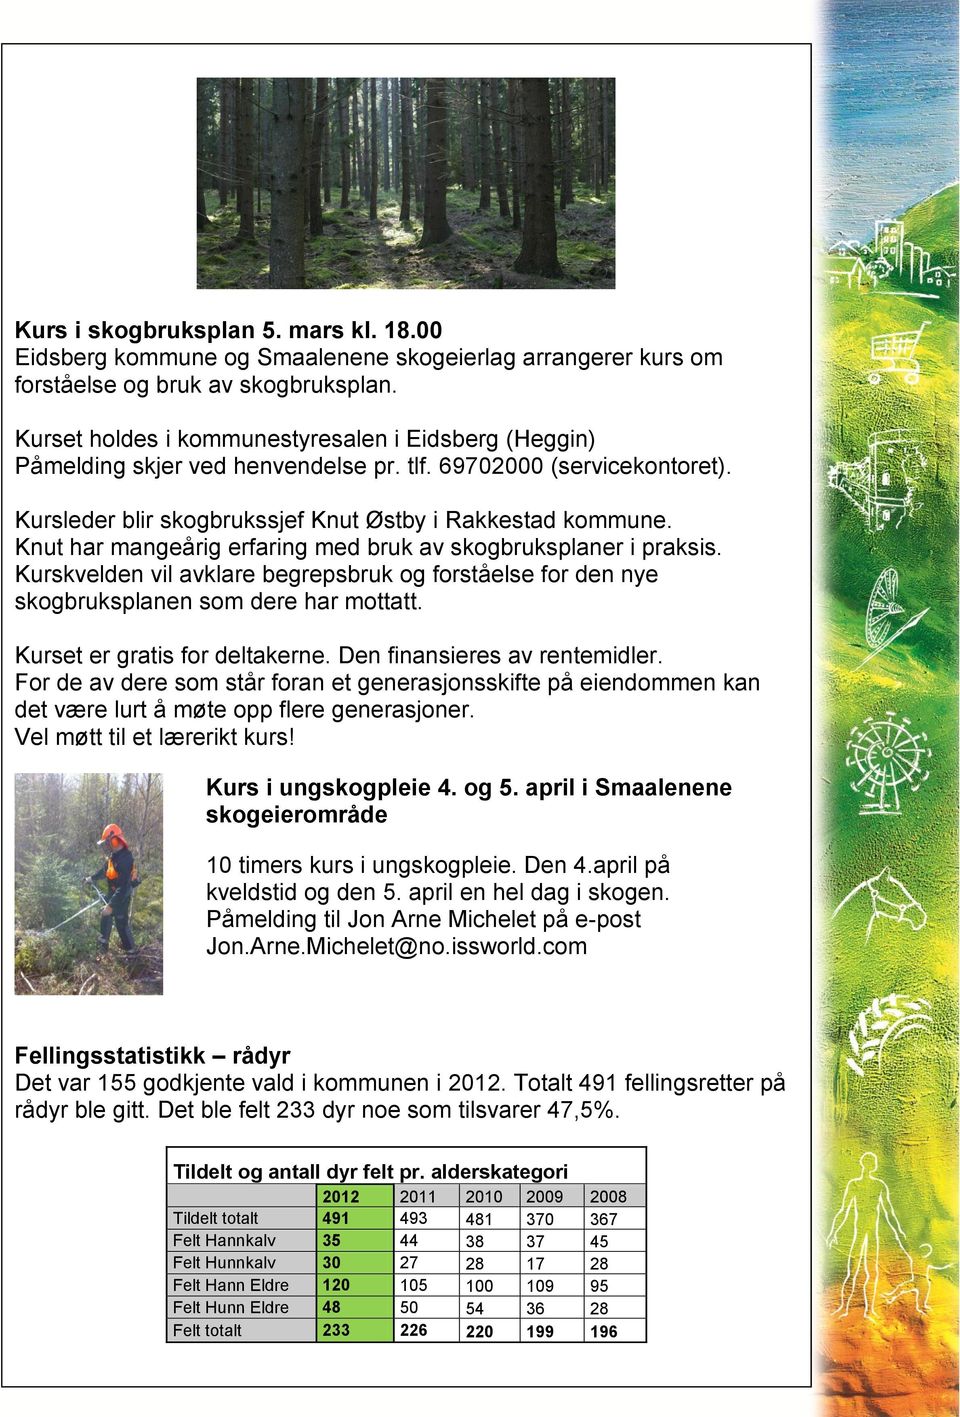 Knut har mangeårig erfaring med bruk av skogbruksplaner i praksis. Kurskvelden vil avklare begrepsbruk og forståelse for den nye skogbruksplanen som dere har mottatt. Kurset er gratis for deltakerne.